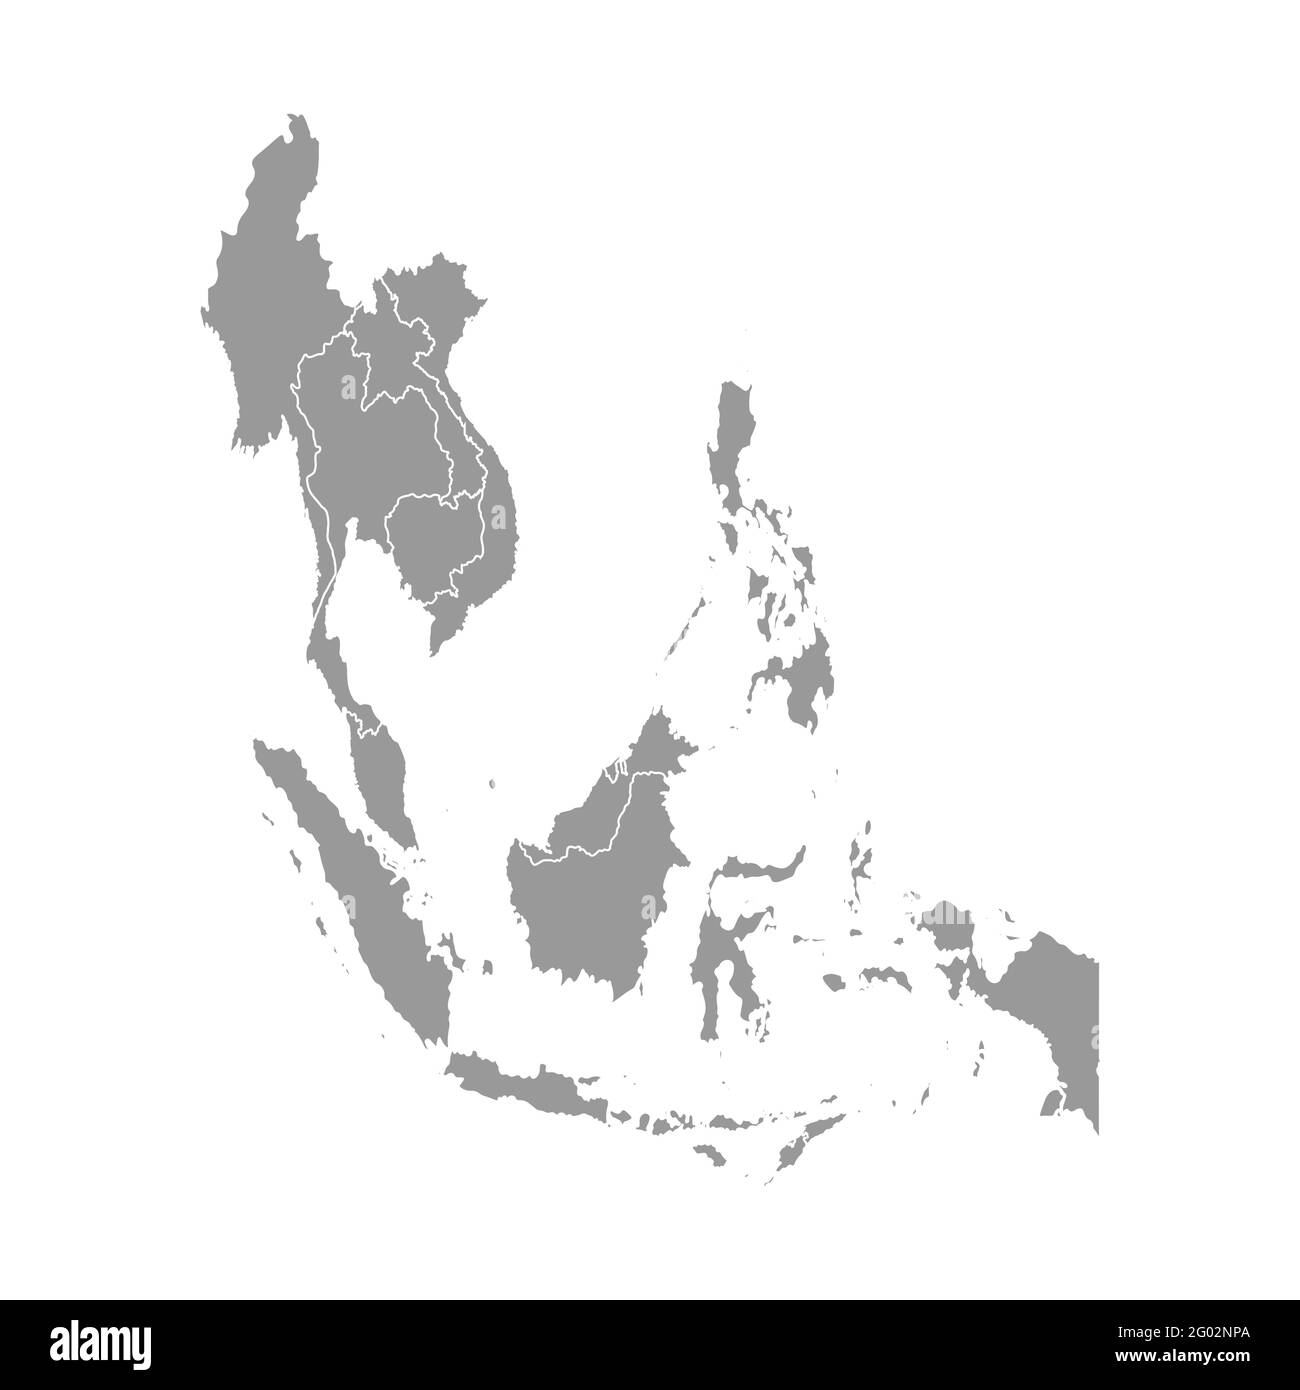 Illustrazione vettoriale con mappa semplificata dei paesi asiatici. Regione sud-est. Stati confinanti con Myanmar, Laos, Indonesia, Vietnam, Cambogia, Malesia Illustrazione Vettoriale